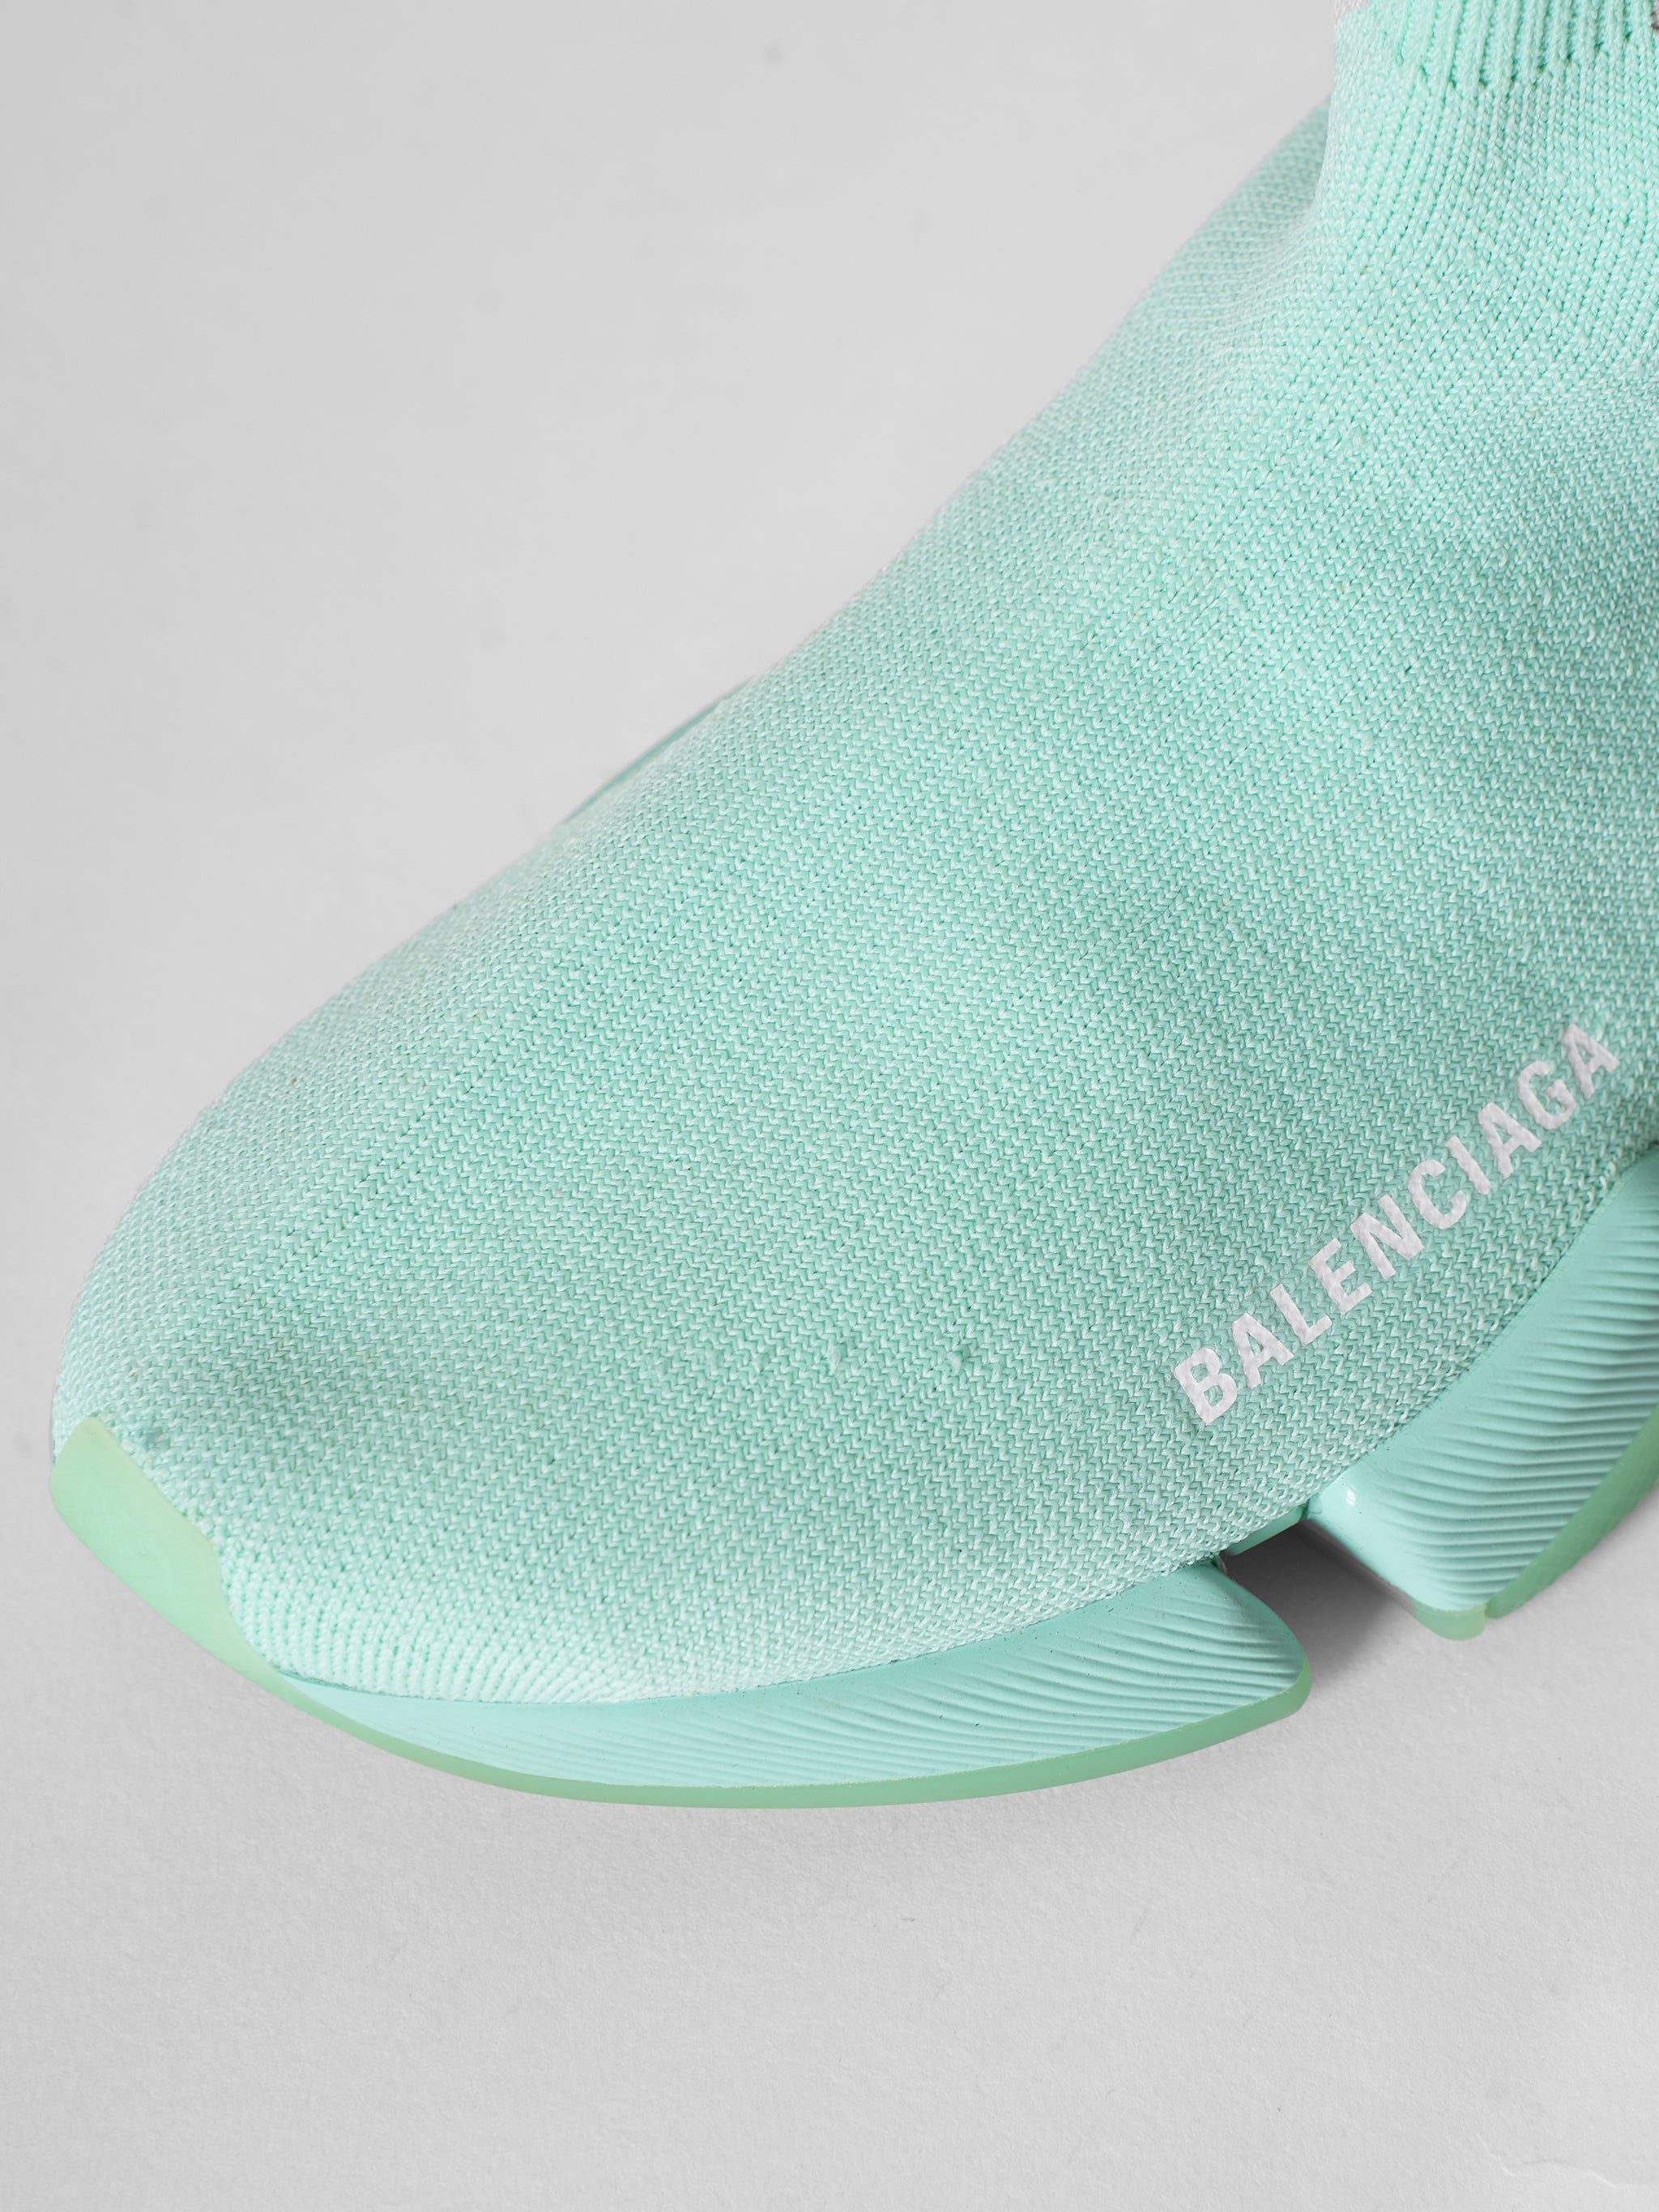 Balenciaga Speed 2.0 Sneakers